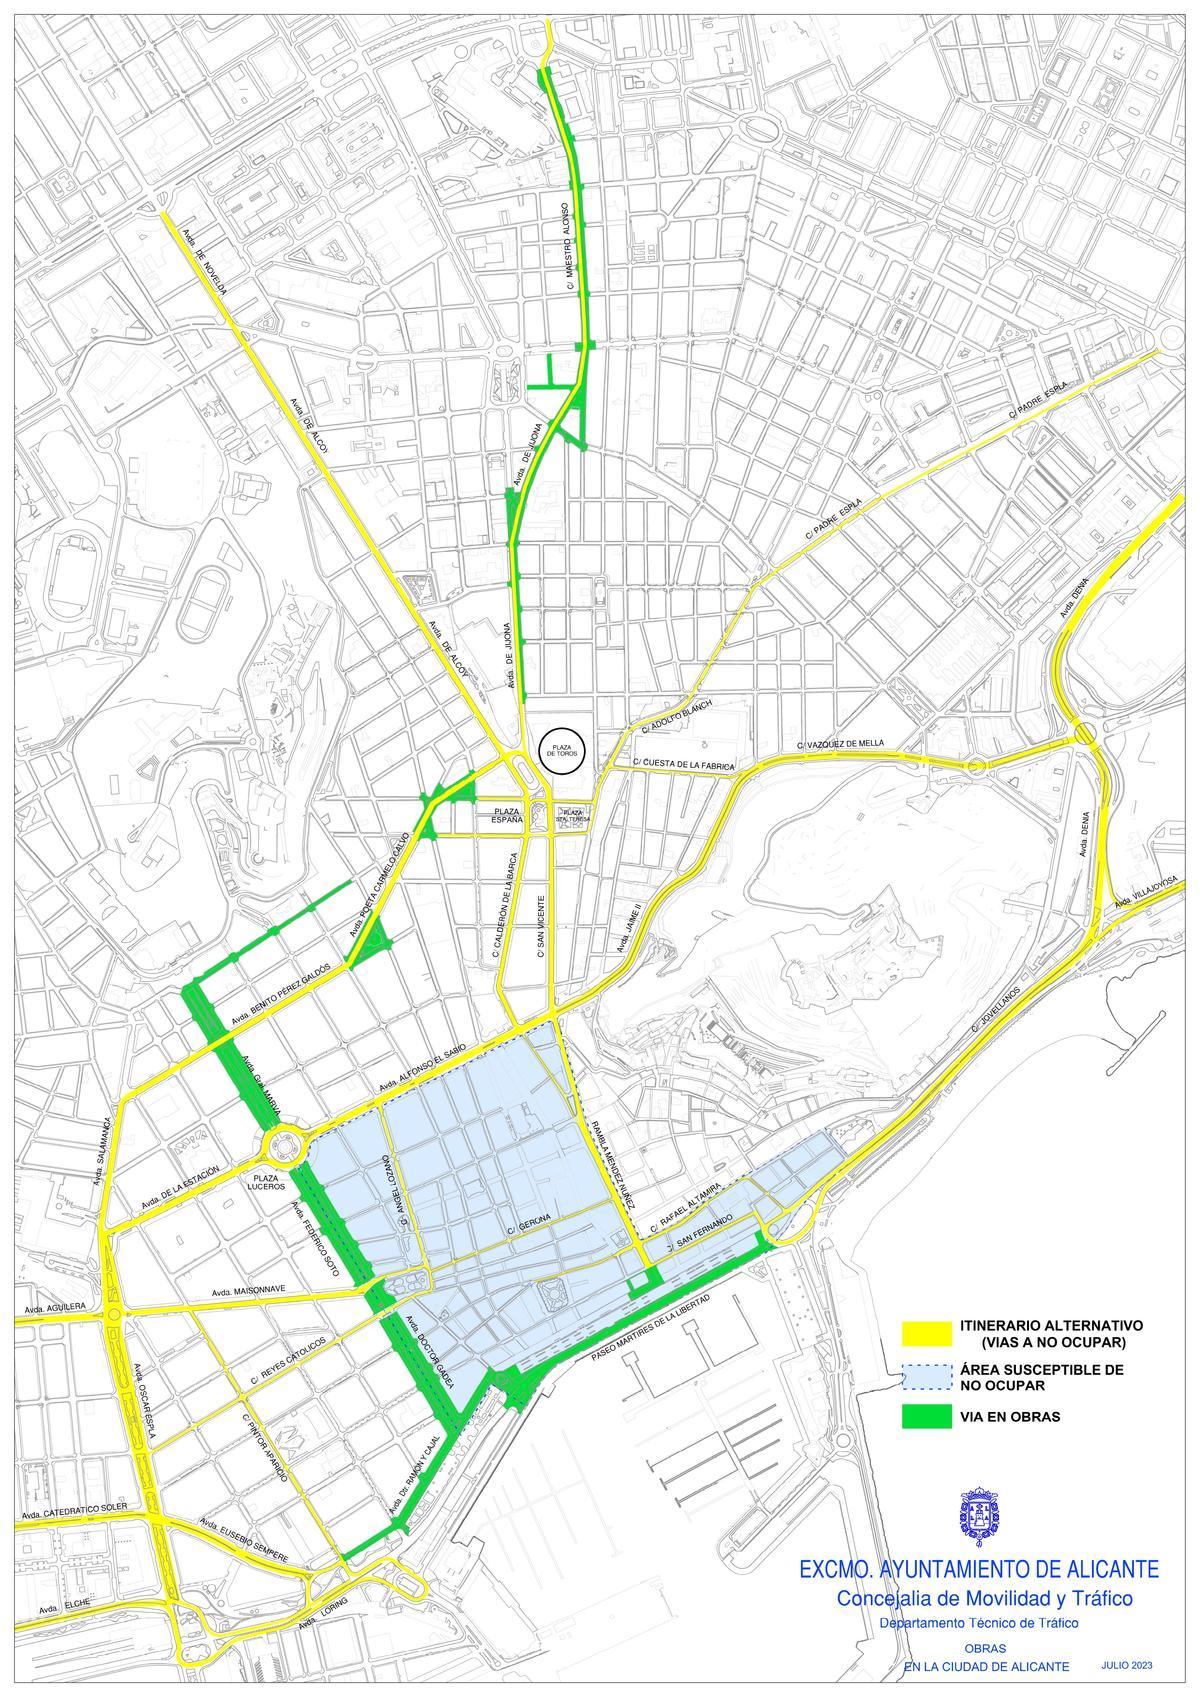 Plano del Ayuntamiento con, en verde, las vías cortadas por obras desde el lunes